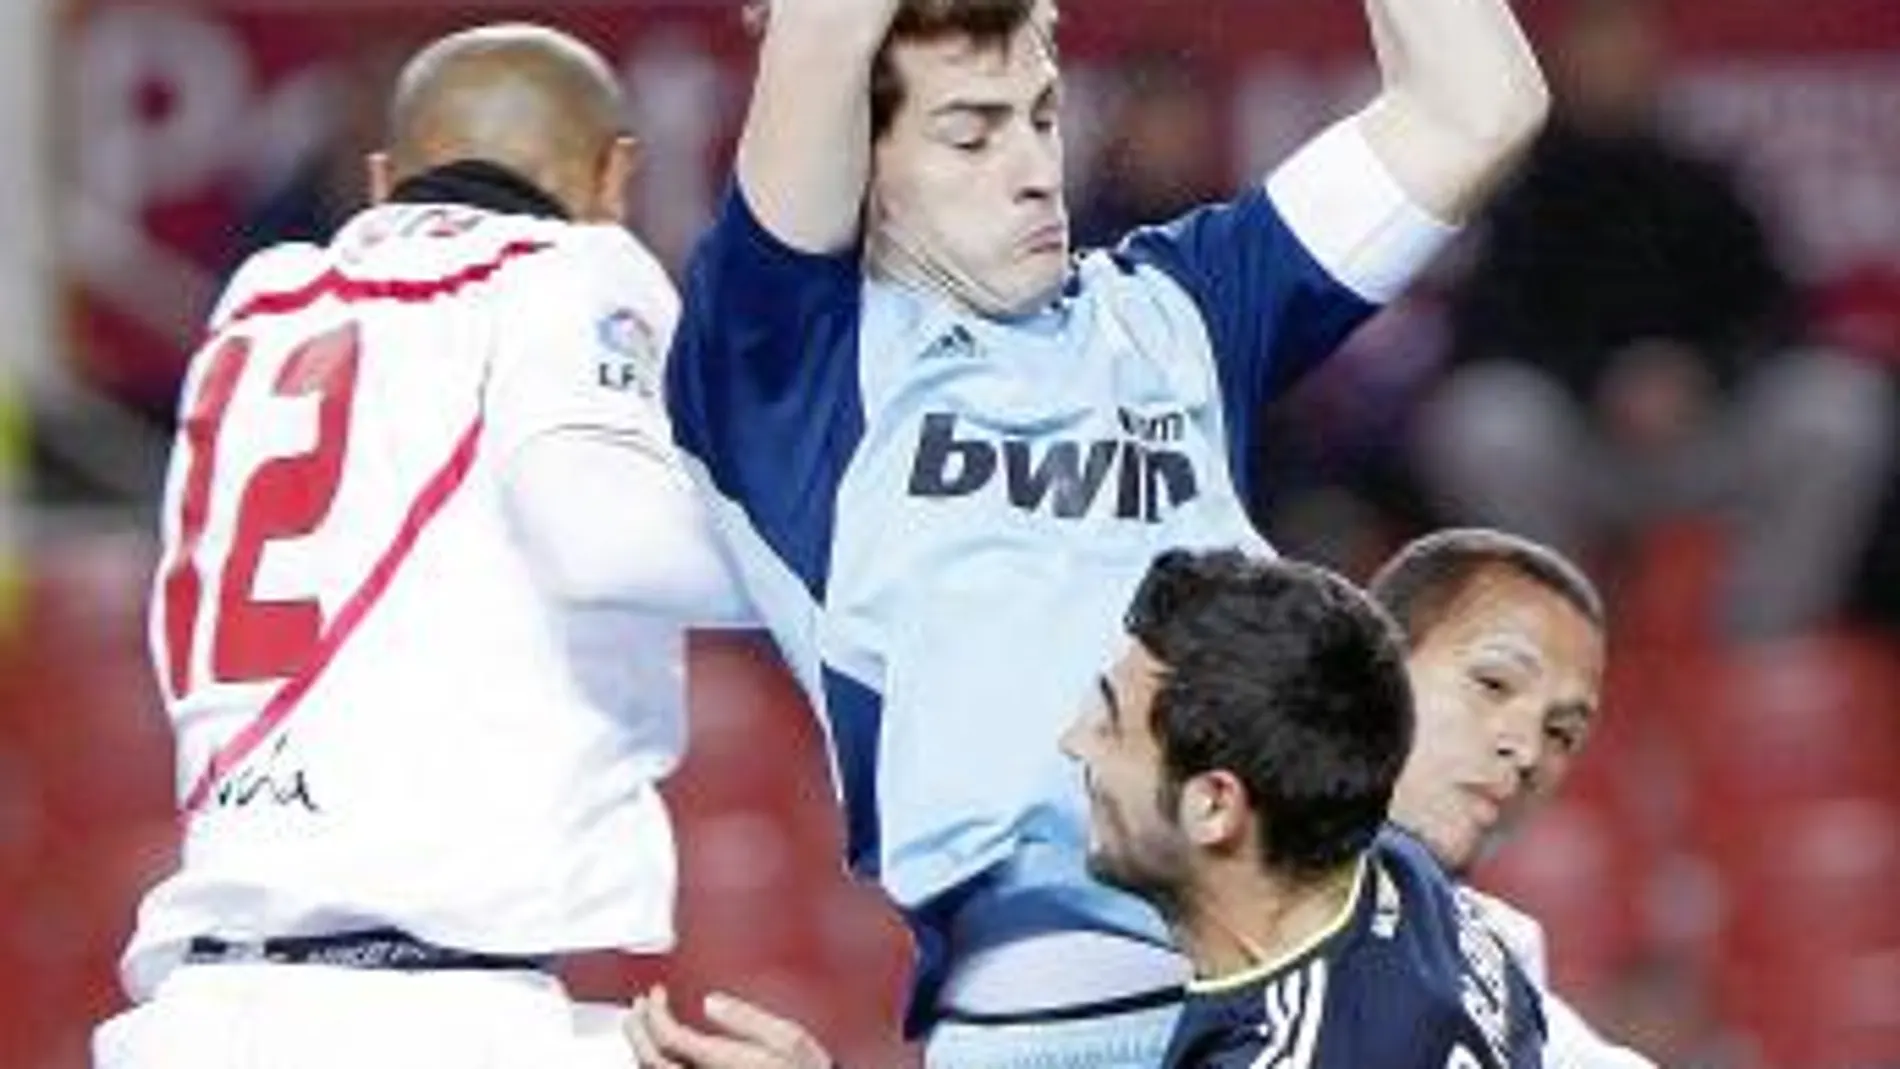 Casillas agarra una pelota por alto entre Kanouté y Luis Fabiano con Albiol vigilando